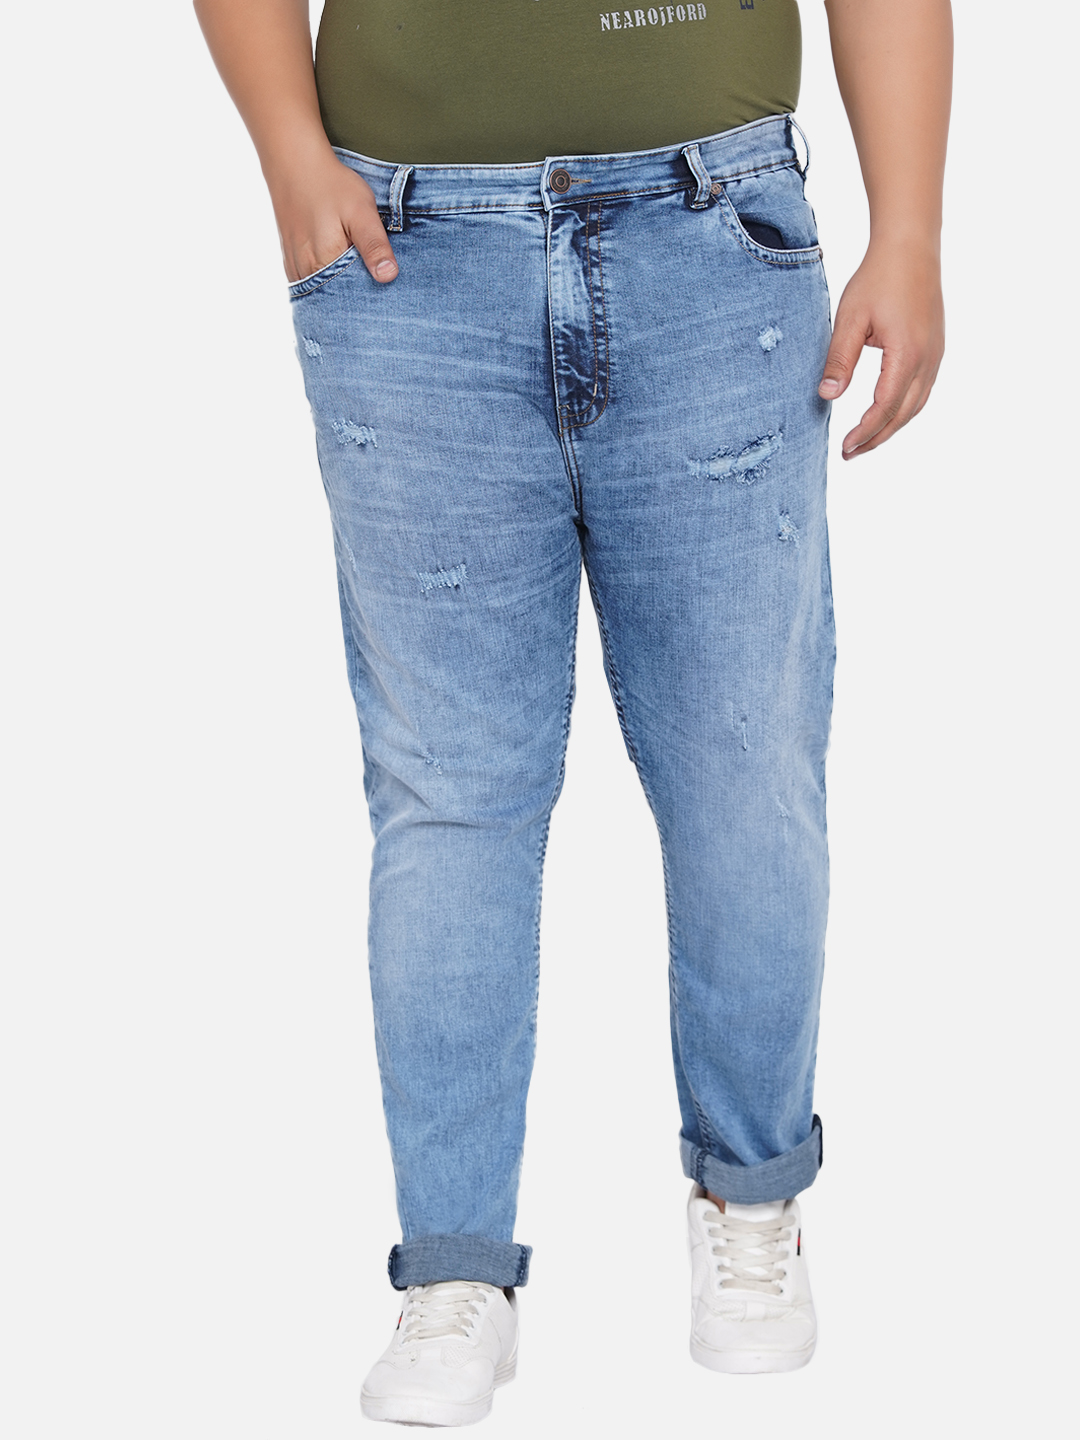 bottomwear/jeans/JPJ12200/jpj12200-6.jpg